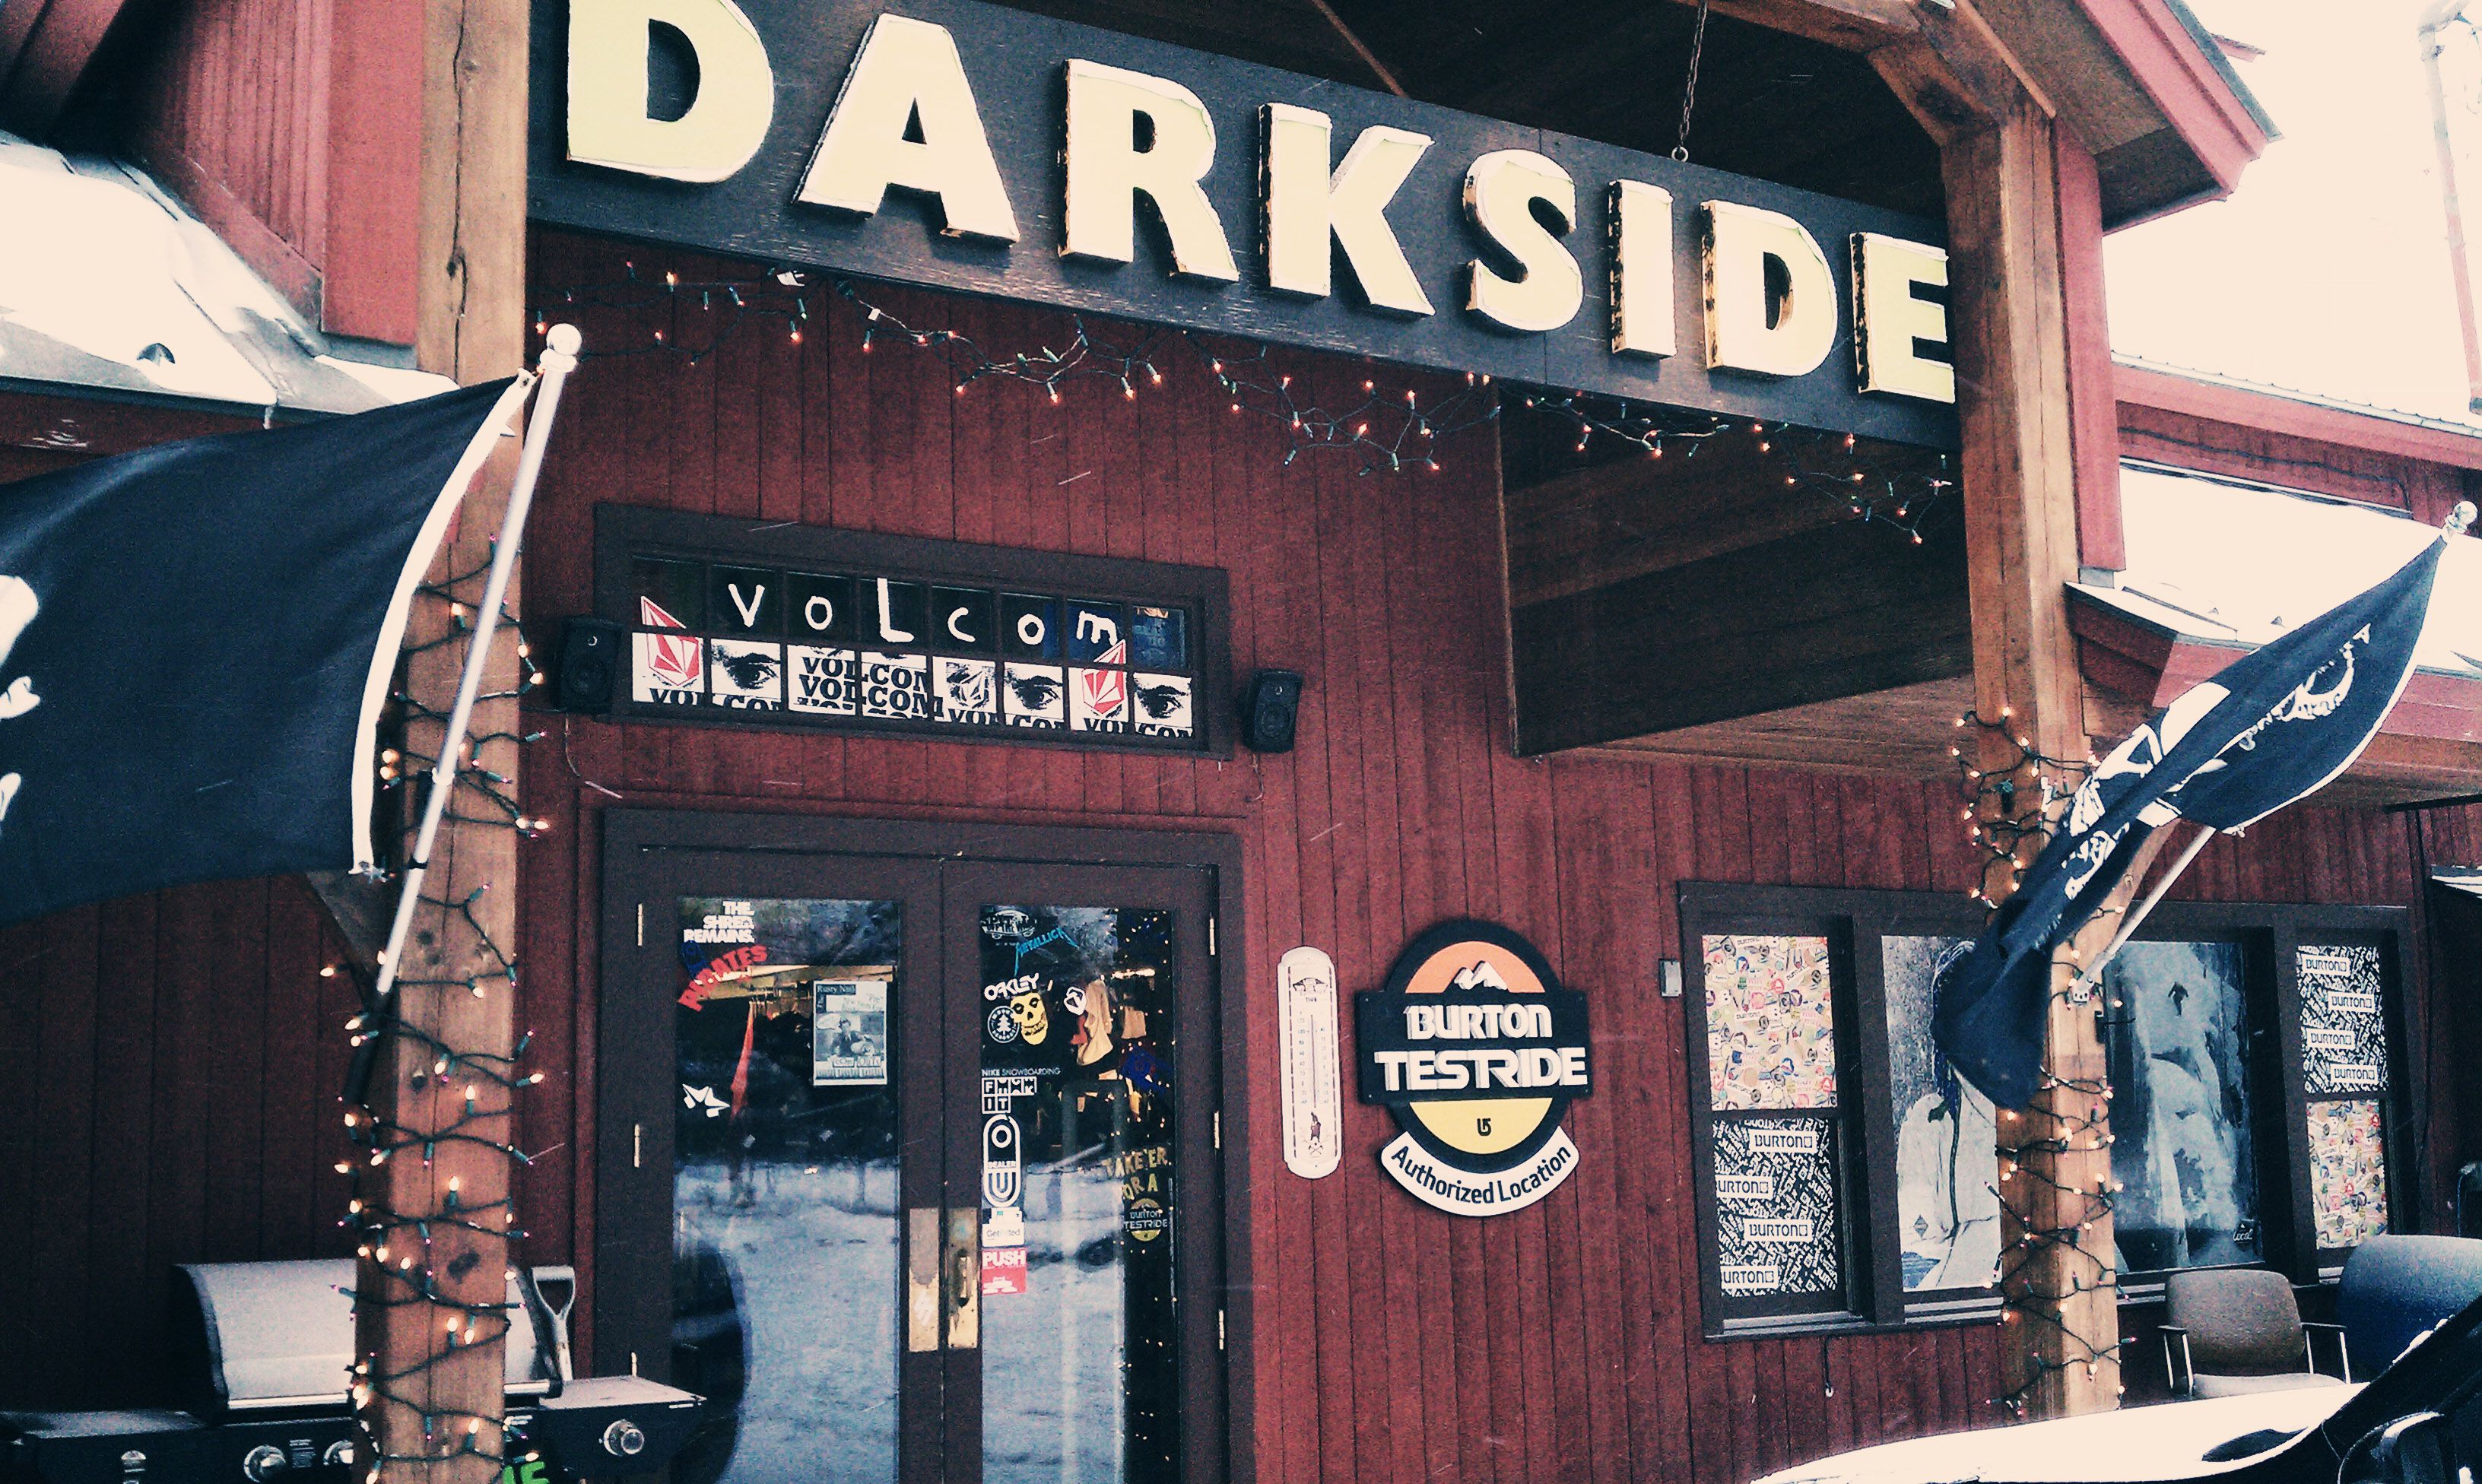 Outside of Darkside